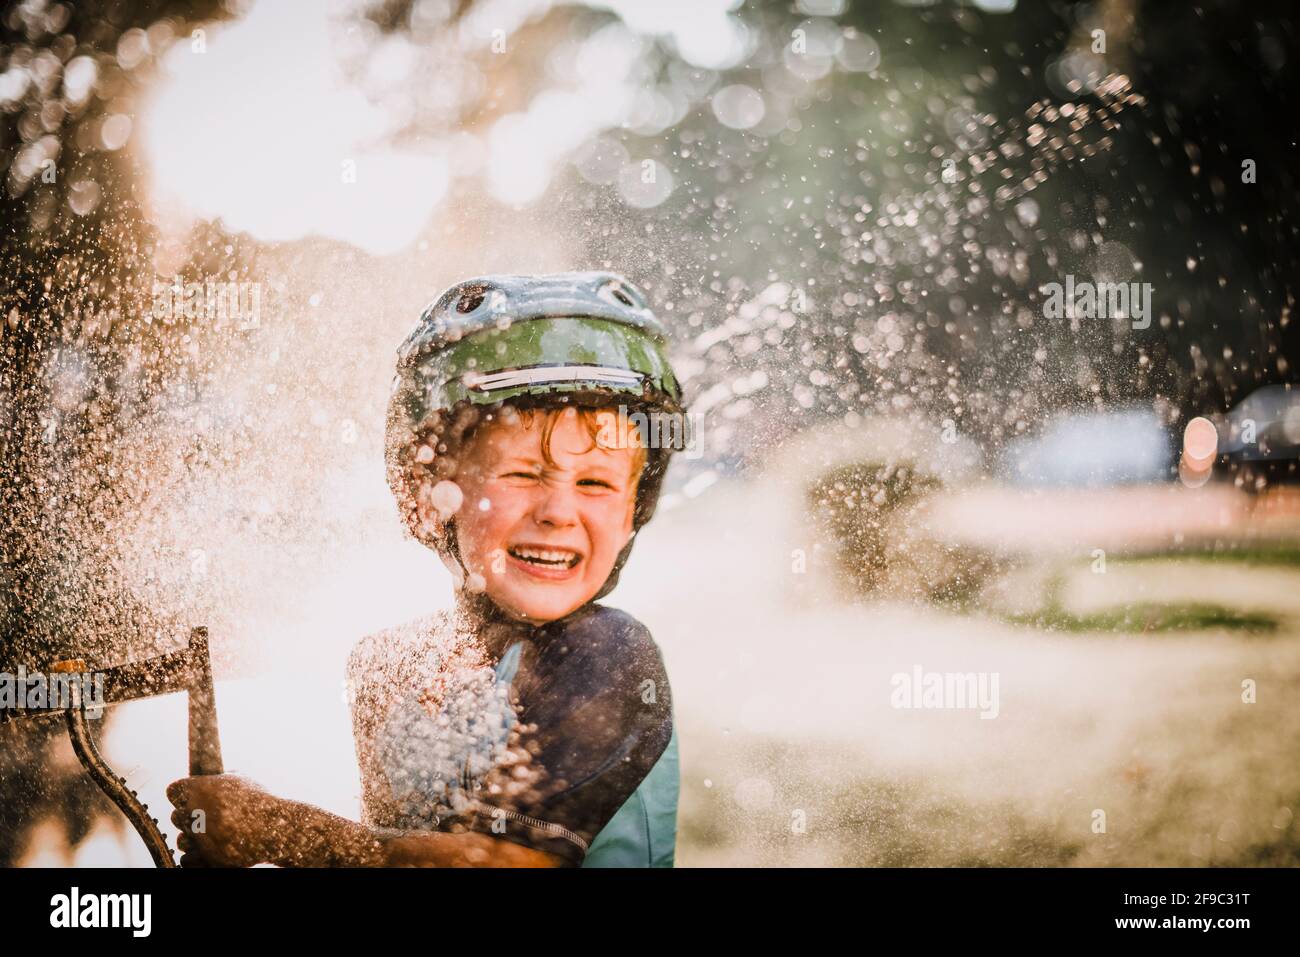 Jeune garçon jouant à l'extérieur dans l'eau d'arrosage éclaboussant et riant Banque D'Images